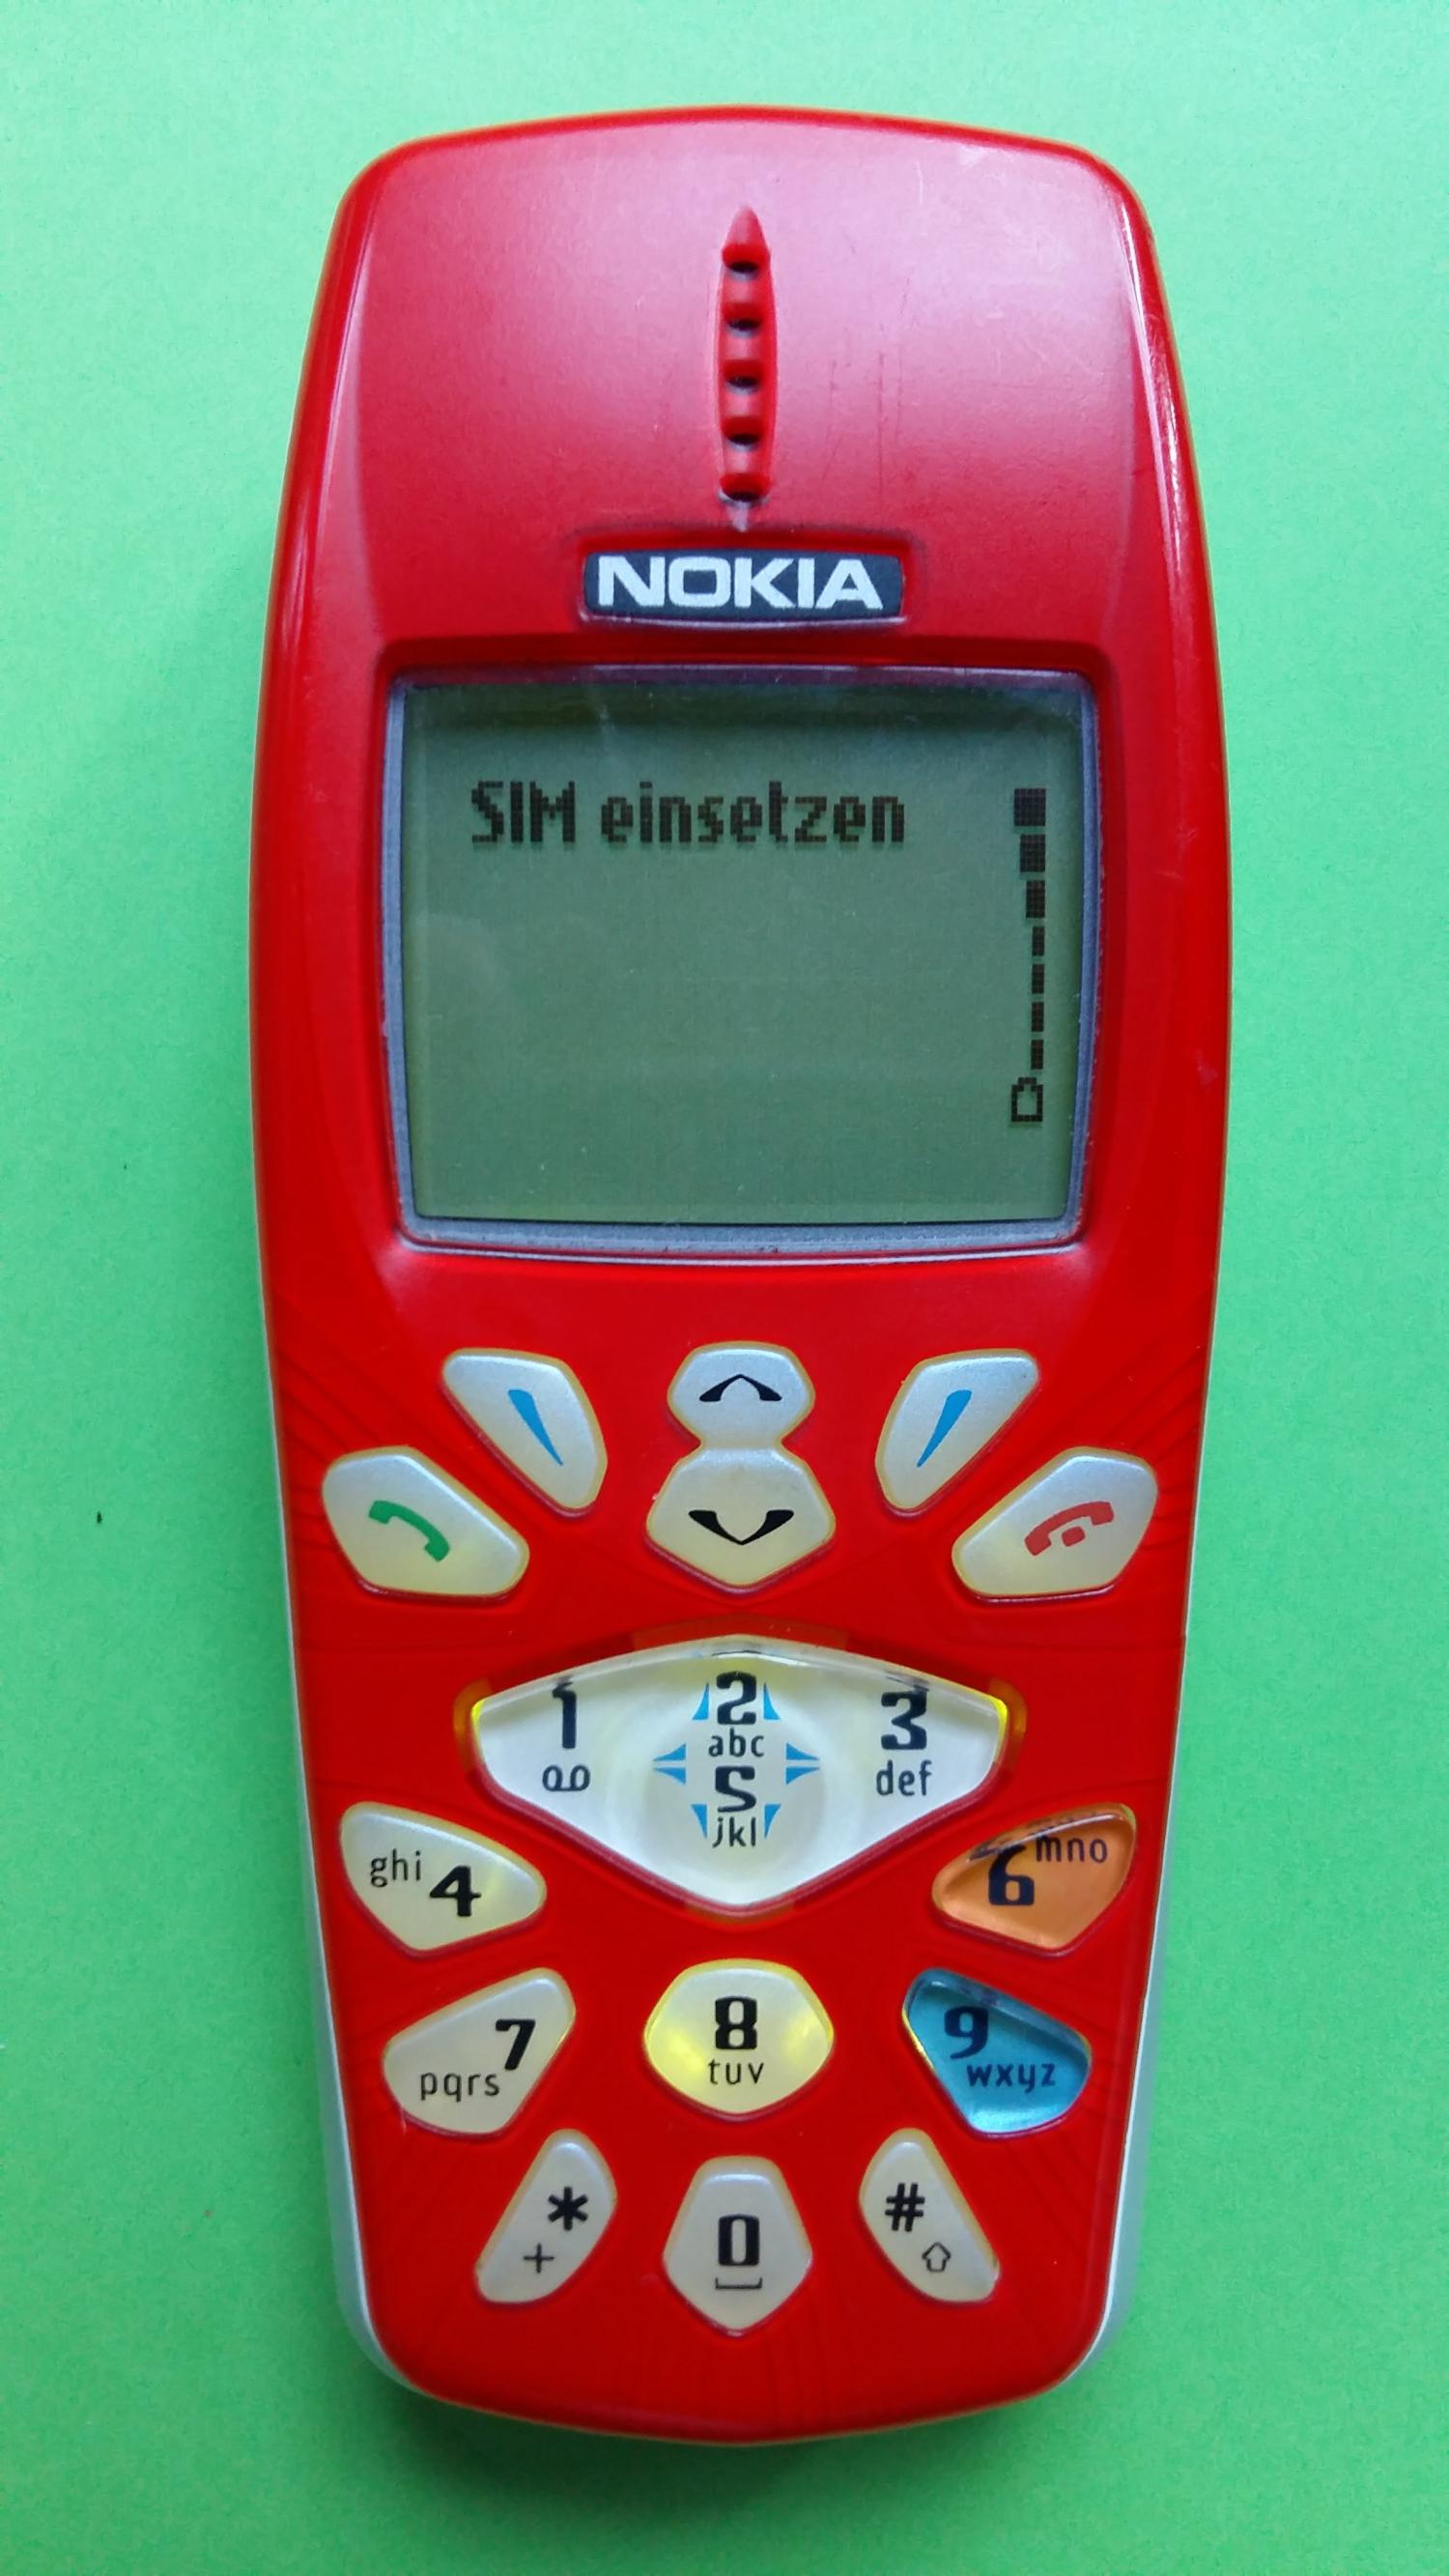 image-7309268-Nokia 3510 (3)1.jpg